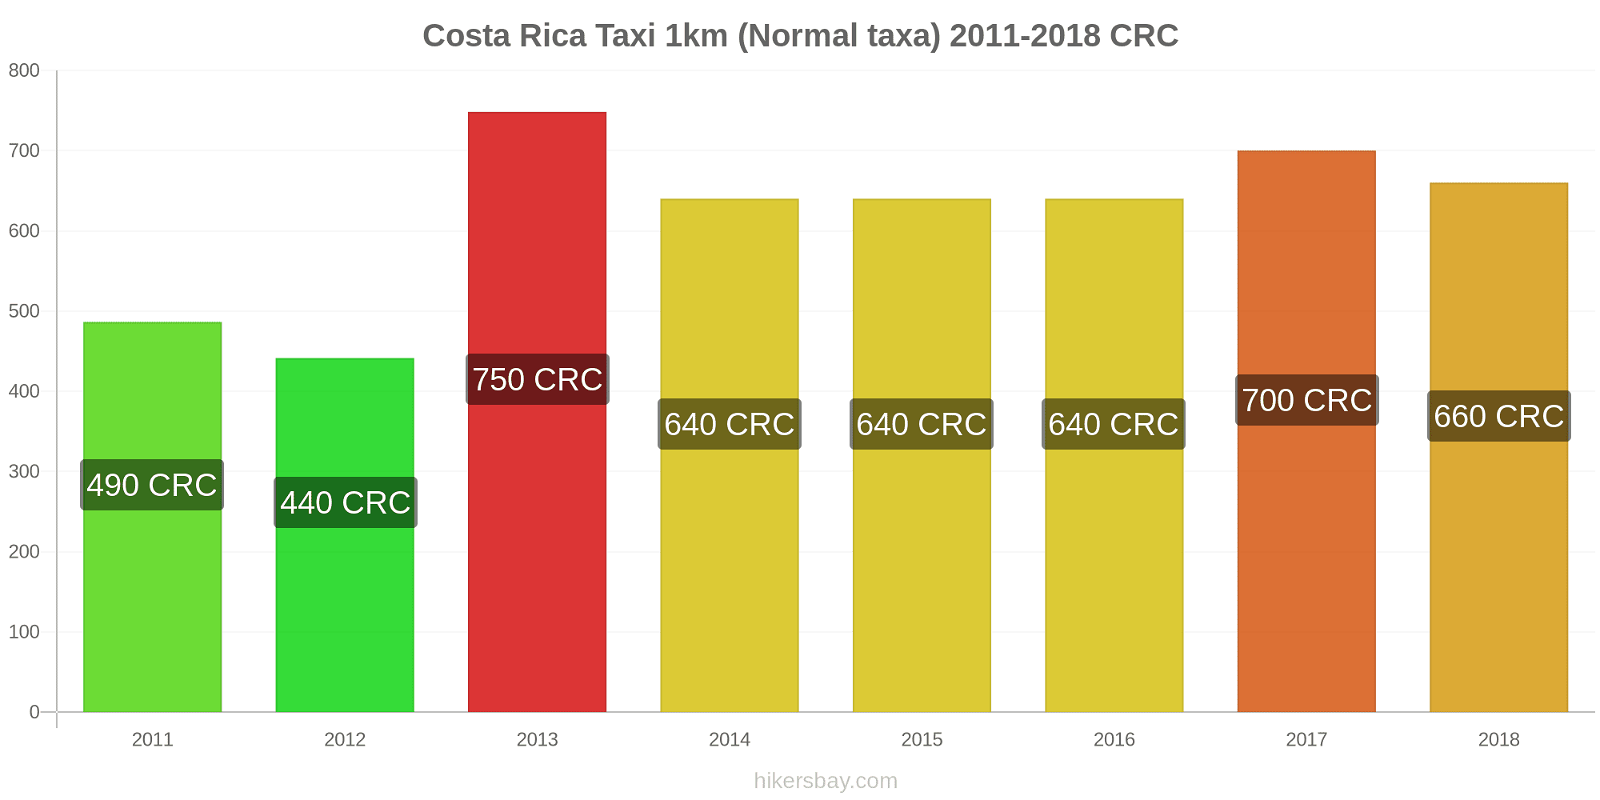 Costa Rica prisändringar Taxi 1km (Normal taxa) hikersbay.com